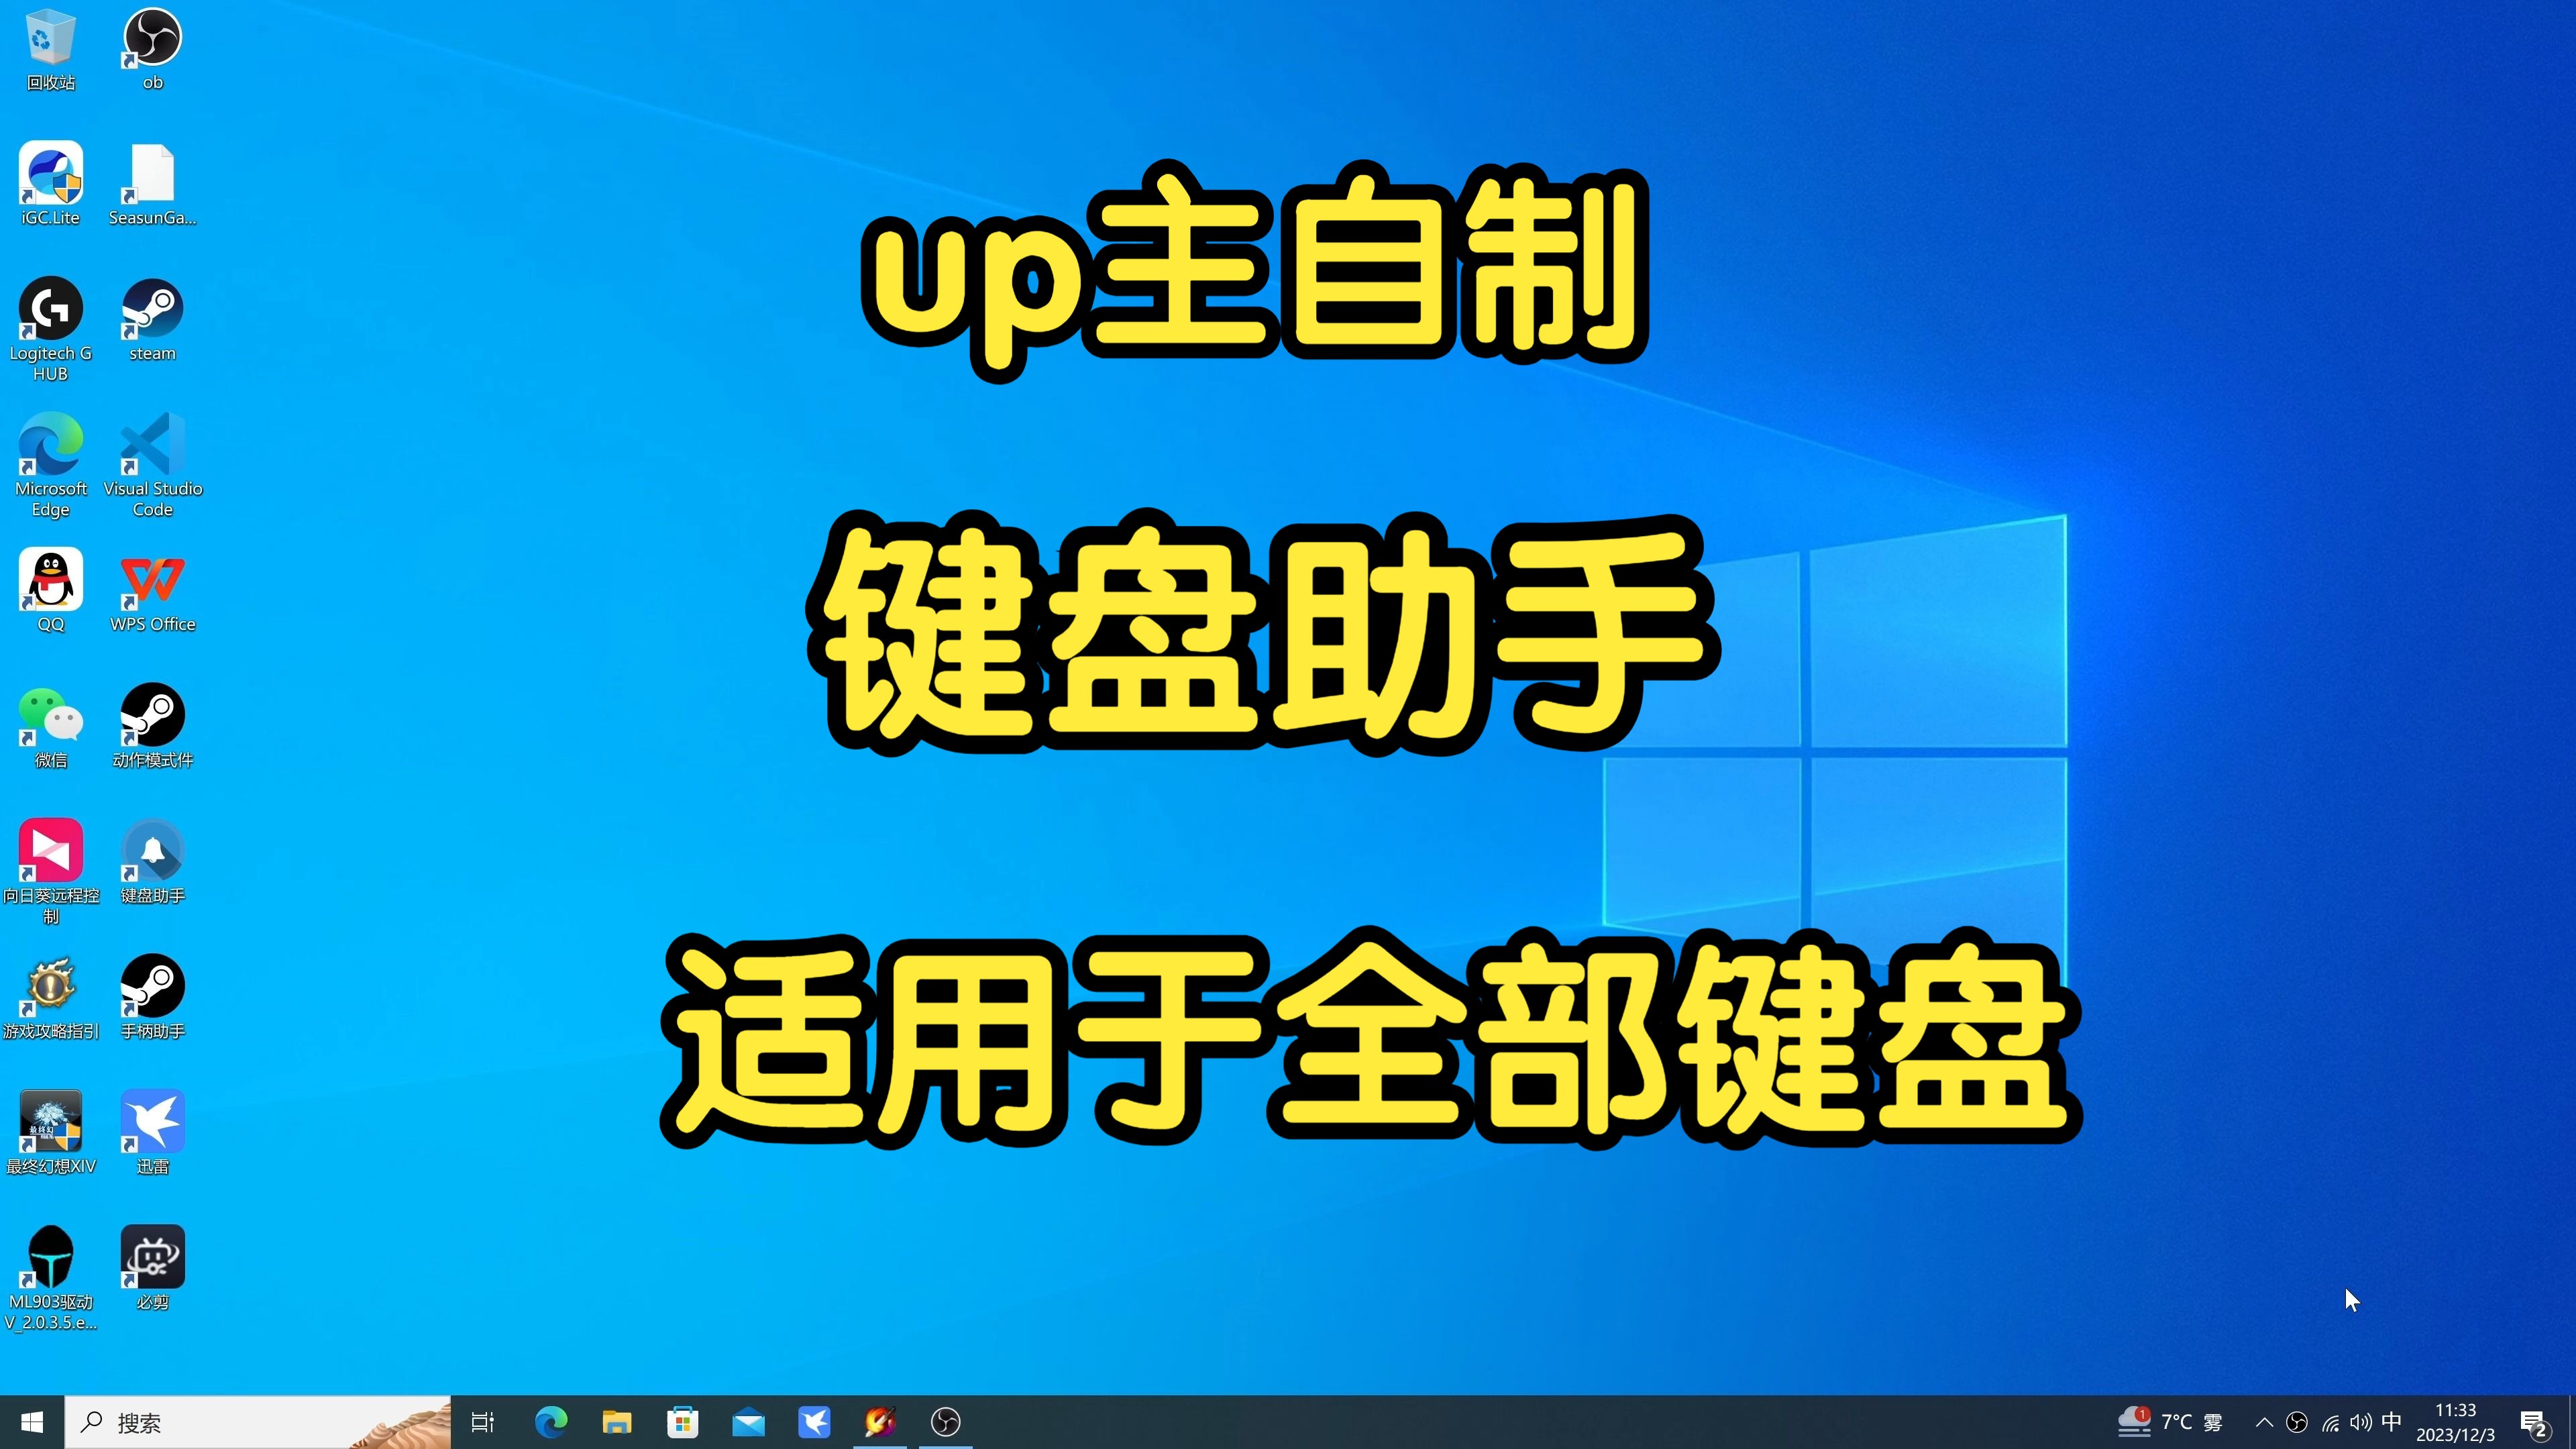 UP主自制键盘助手，可适用于全部键盘。